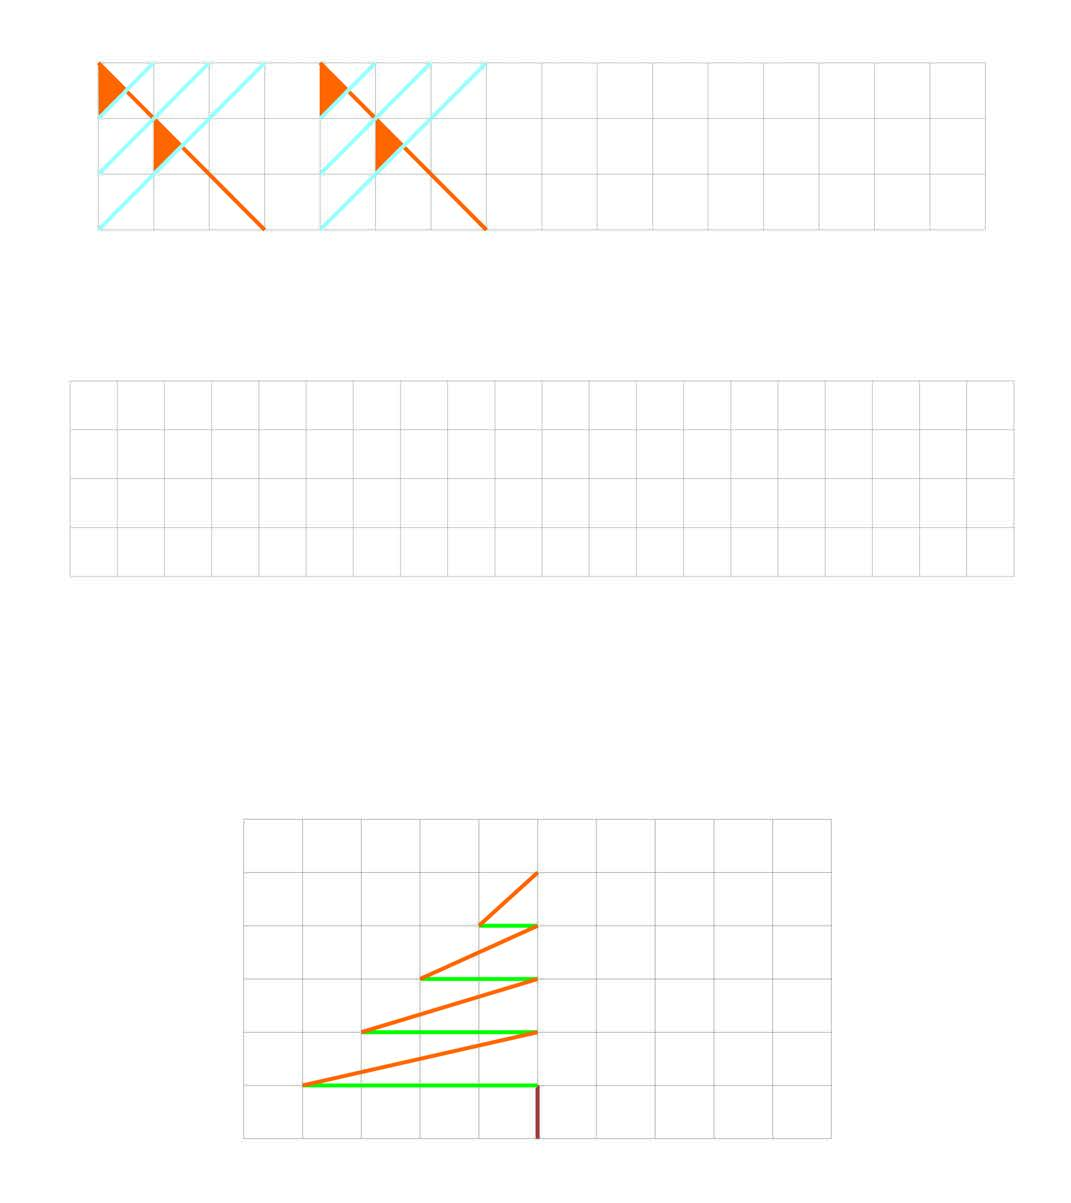 Eνότητα 9 δ. Παρατηρώ και συνεχίζω το γεωμετρικό μοτίβο με κάθετες ευθείες. ε. Xρησιμοποιώ χάρακα και χρώματα και φτιάχνω κι εγώ το δικό μου γεωμετρικό μοτίβο με κάθετες ευθείες. στ.